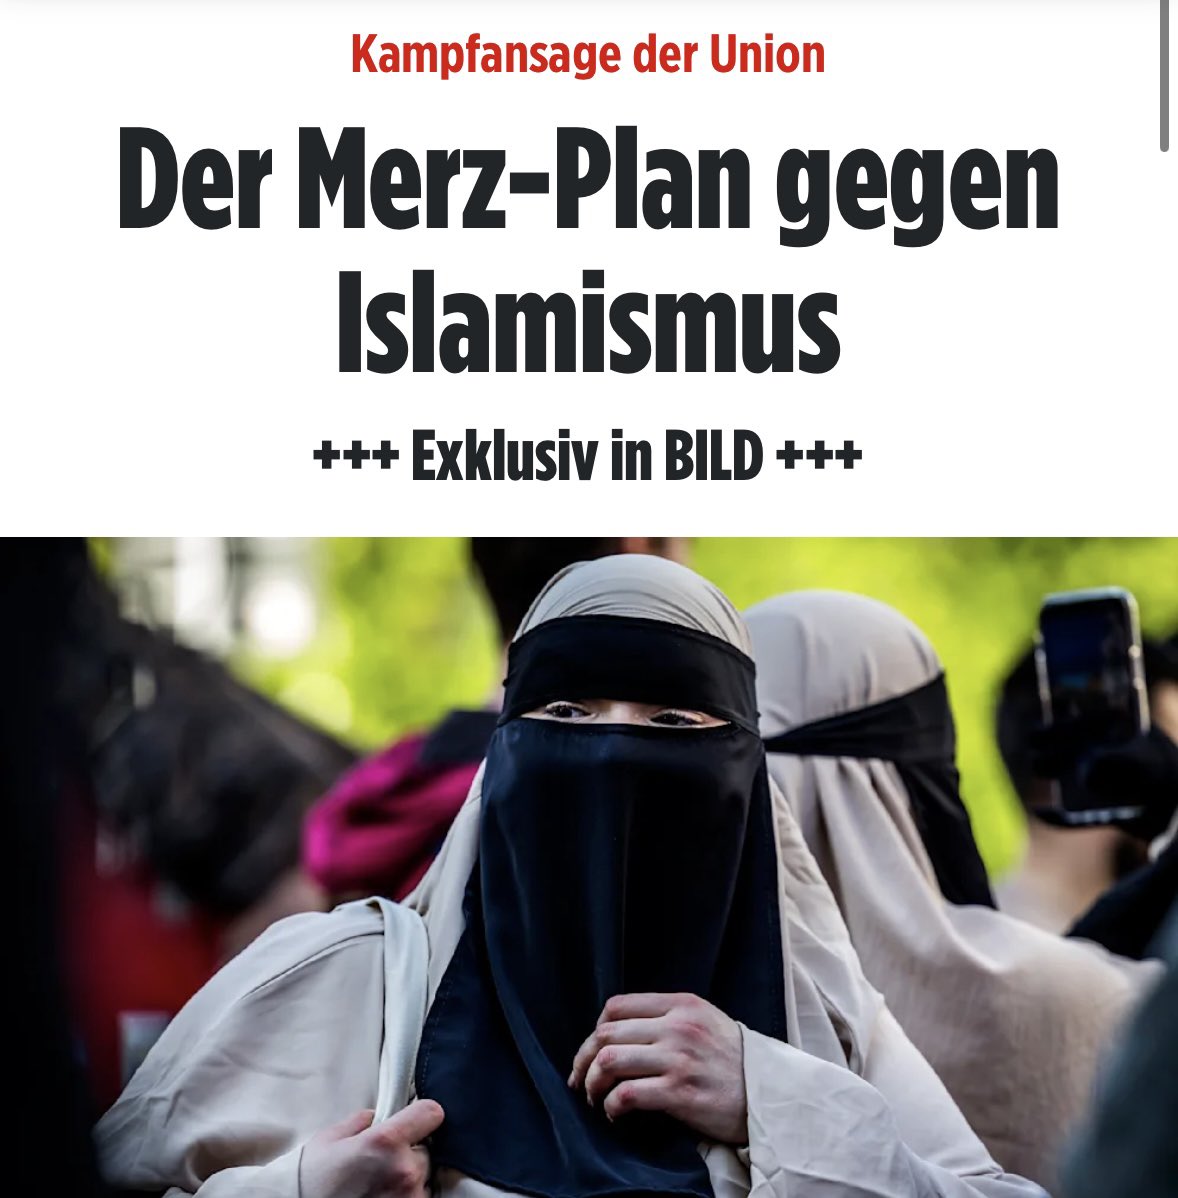 Klare Kante der #Merz-#CDU gegen #Islamismus und #Kalifat !
Entzug #Doppelpass, keine Stütze und sofortige #Abschiebung! So geht das Frau #Faeser! #KalifatDeutschland 
➡️ m.bild.de/politik/inland…